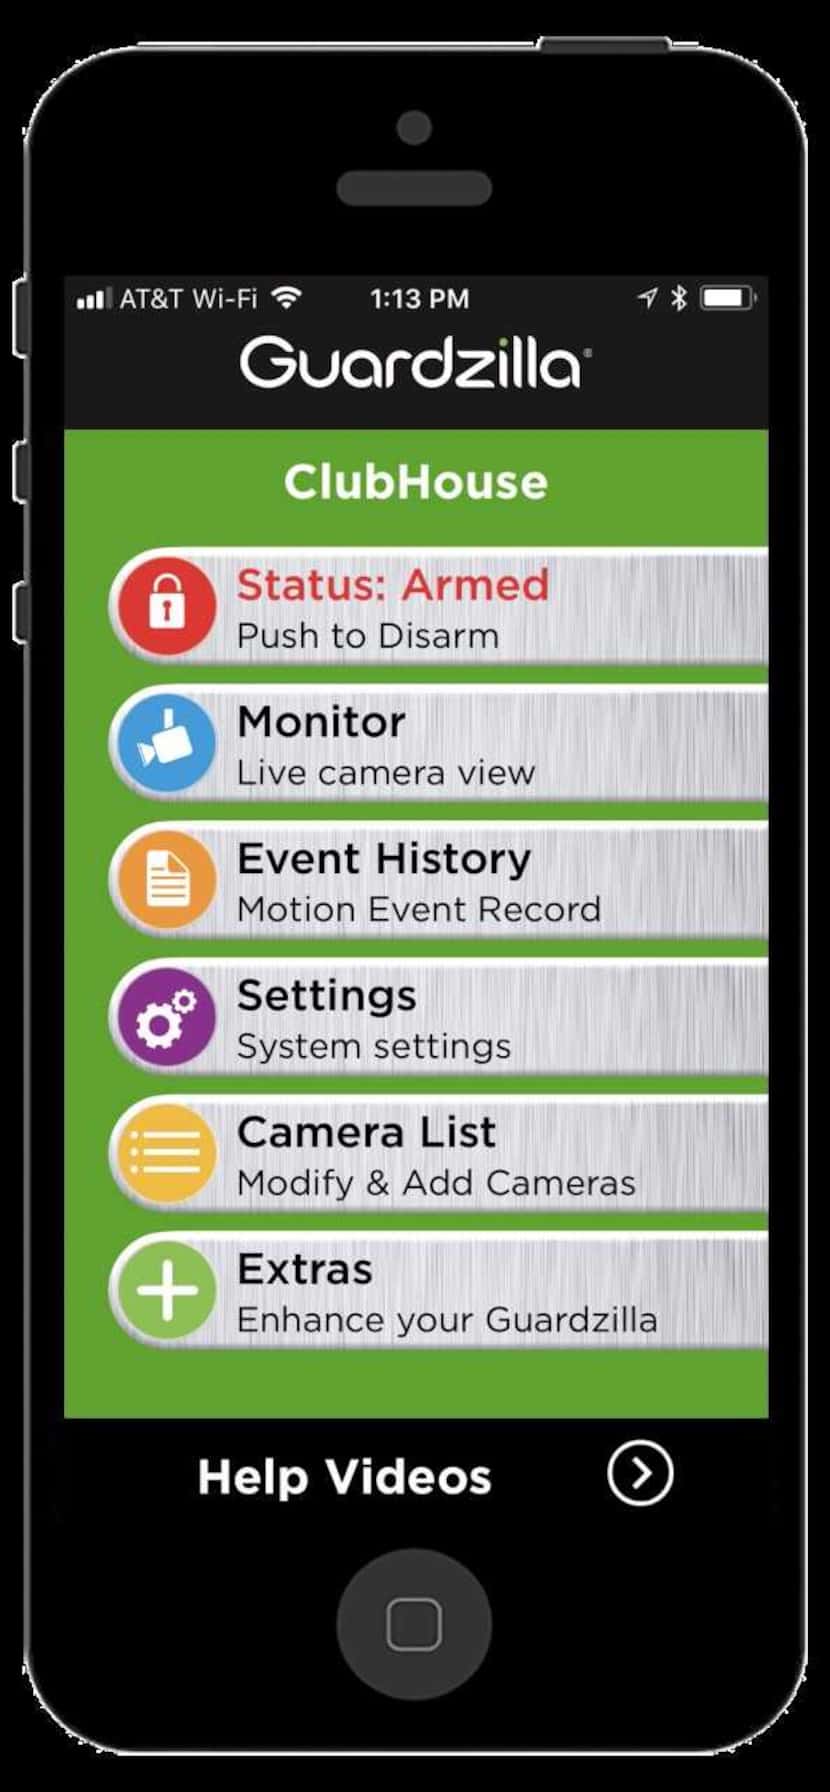 The Guardzilla app home screen